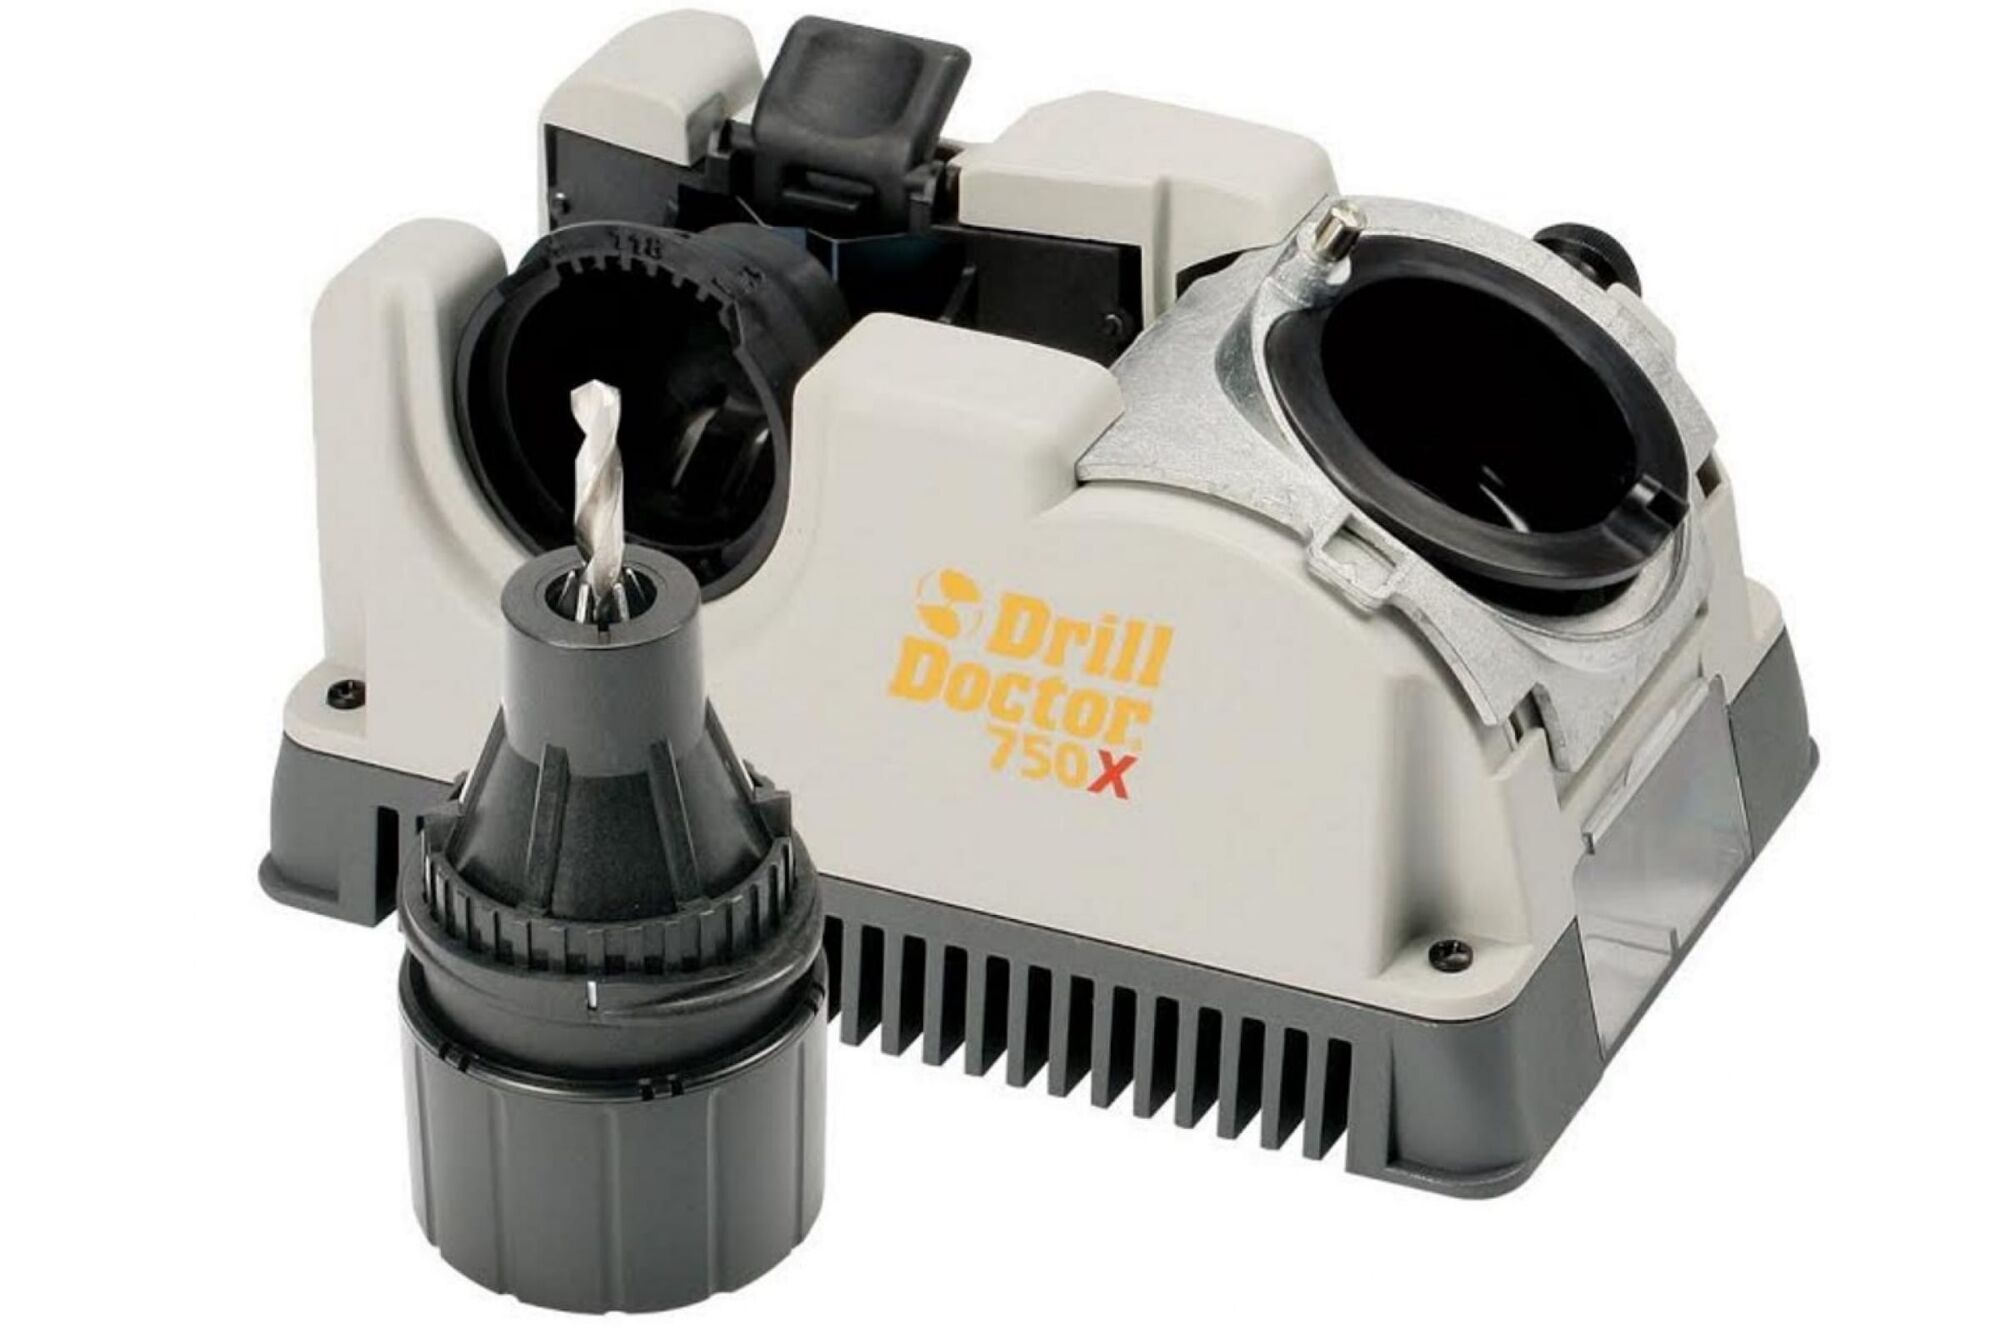 Заточной станок для сверл Darex Drill Doctor750 X, D2.5-19мм в боксе DD750 X I 230 В, box М00008189